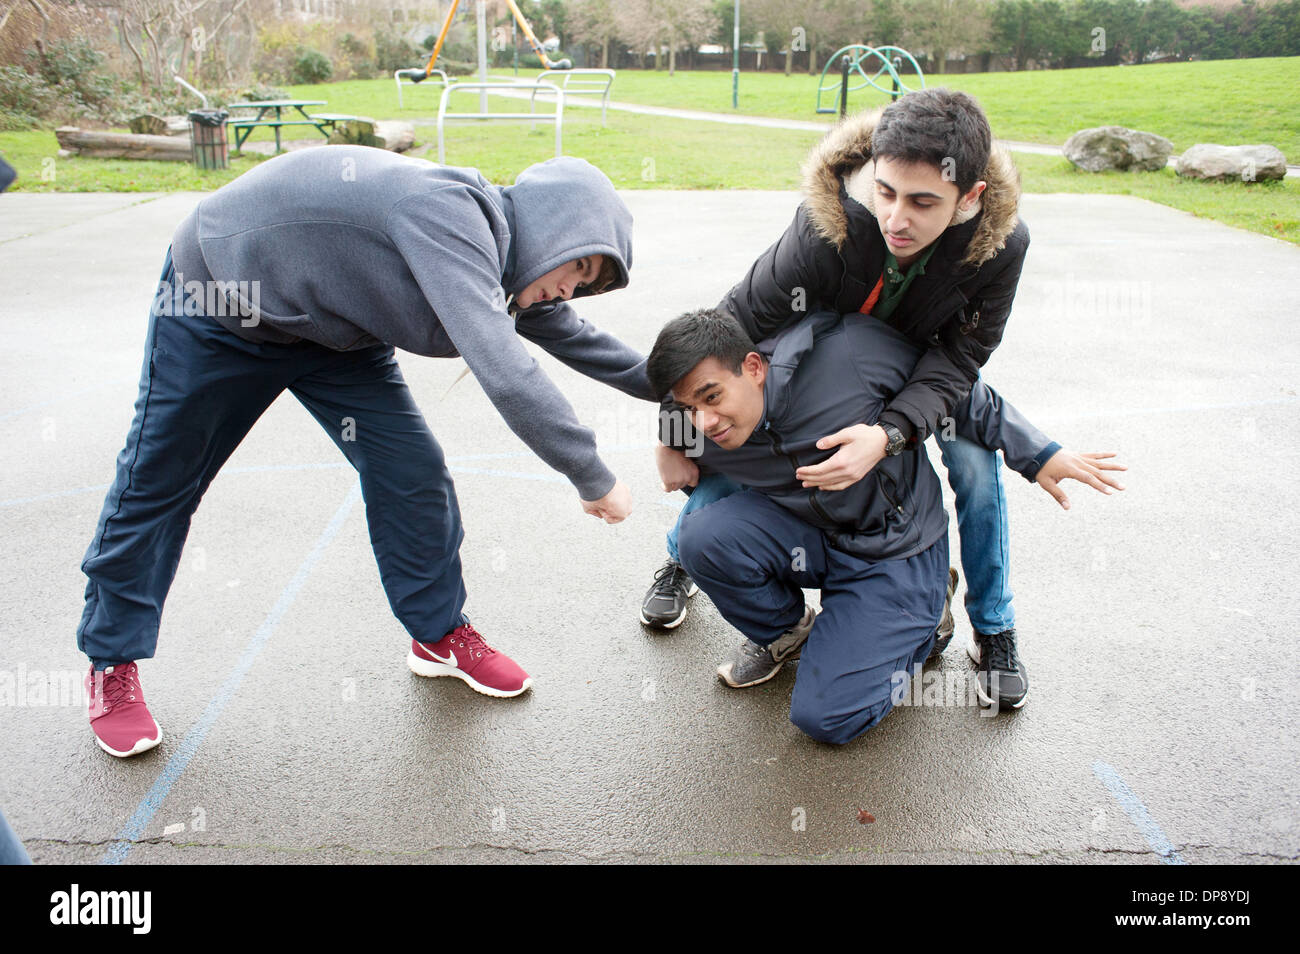 Ein Teenager, der von einer Gruppe von jungen angegriffen wird. Stockfoto